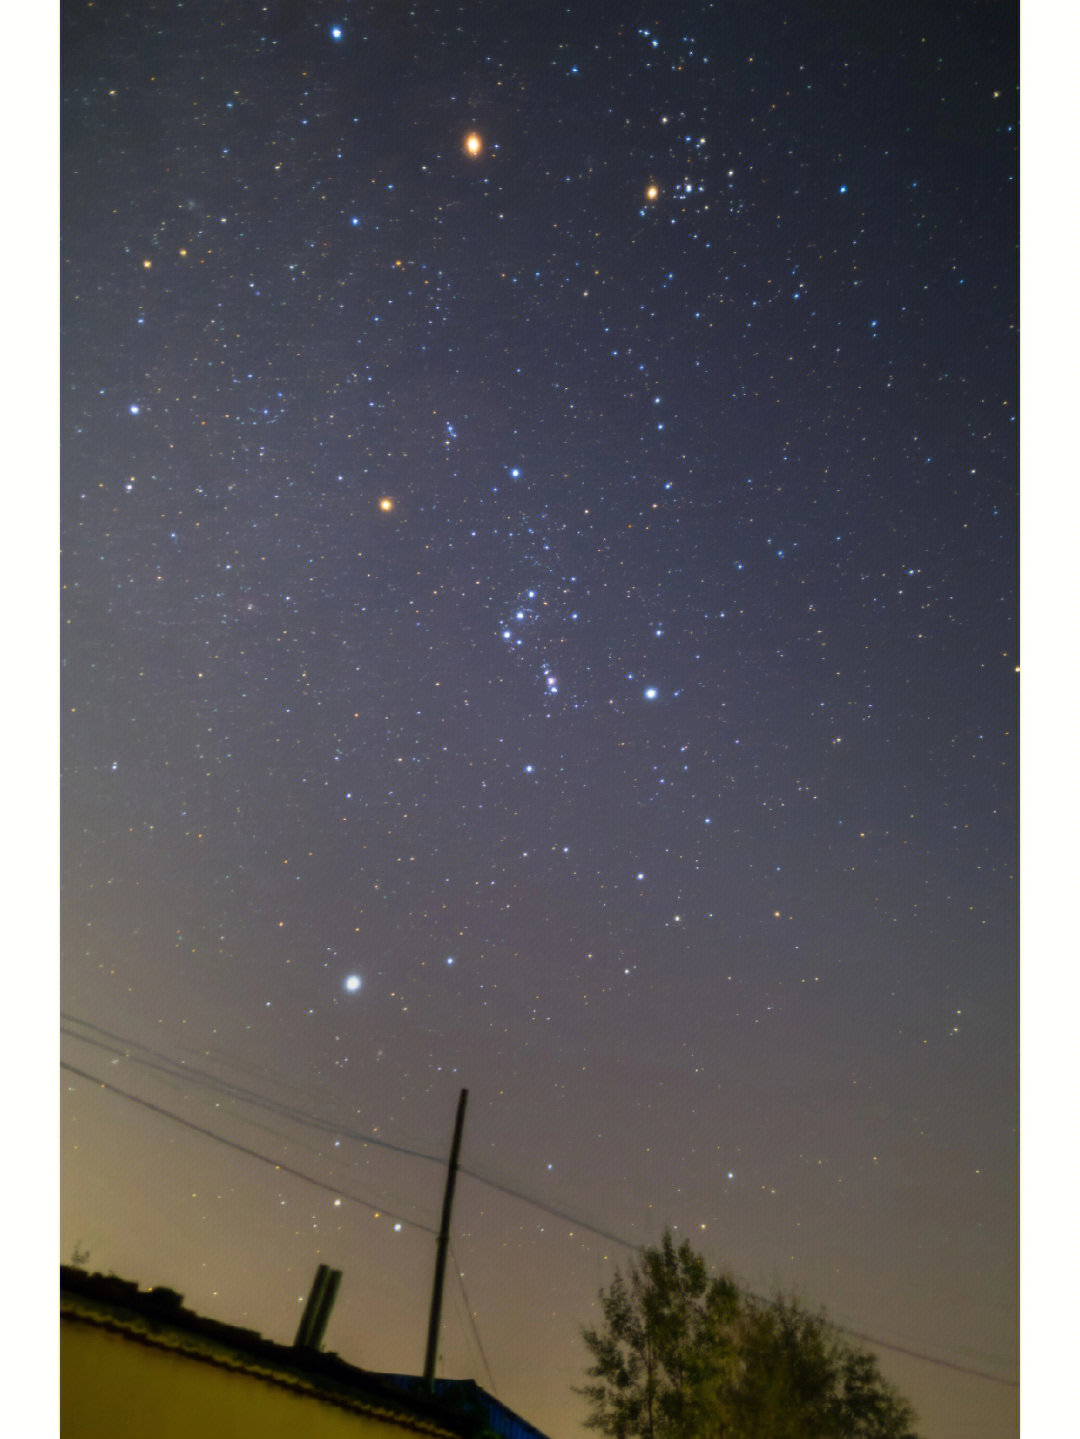 猎户座大星云清晰可见,天狼星,参宿四和南河二组成冬季大三角,让人